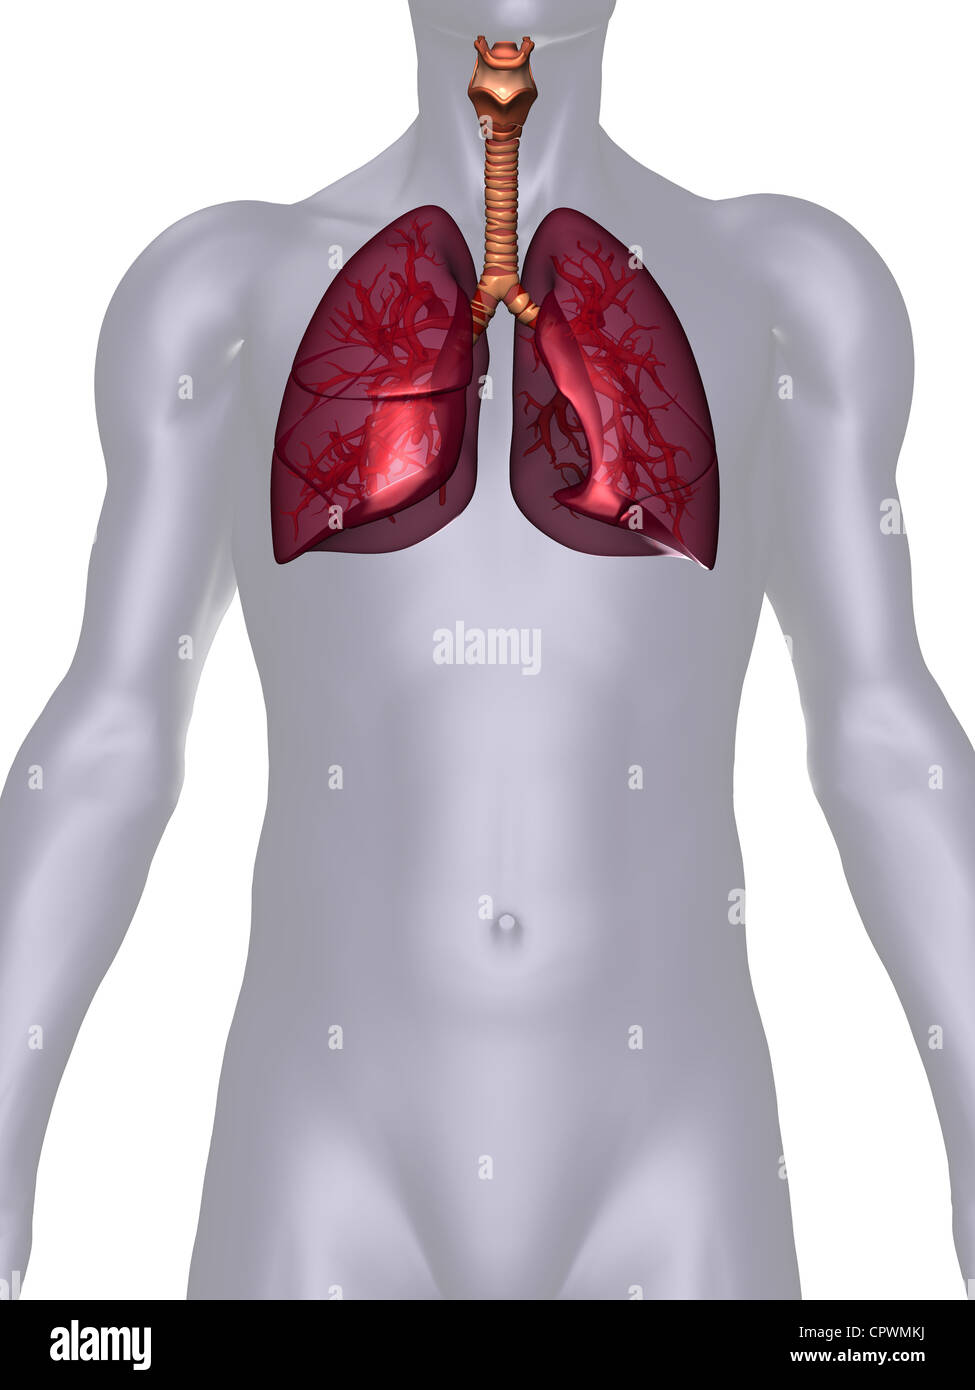 Illustrazione anatomica del corpo umano che mostra i polmoni Foto Stock